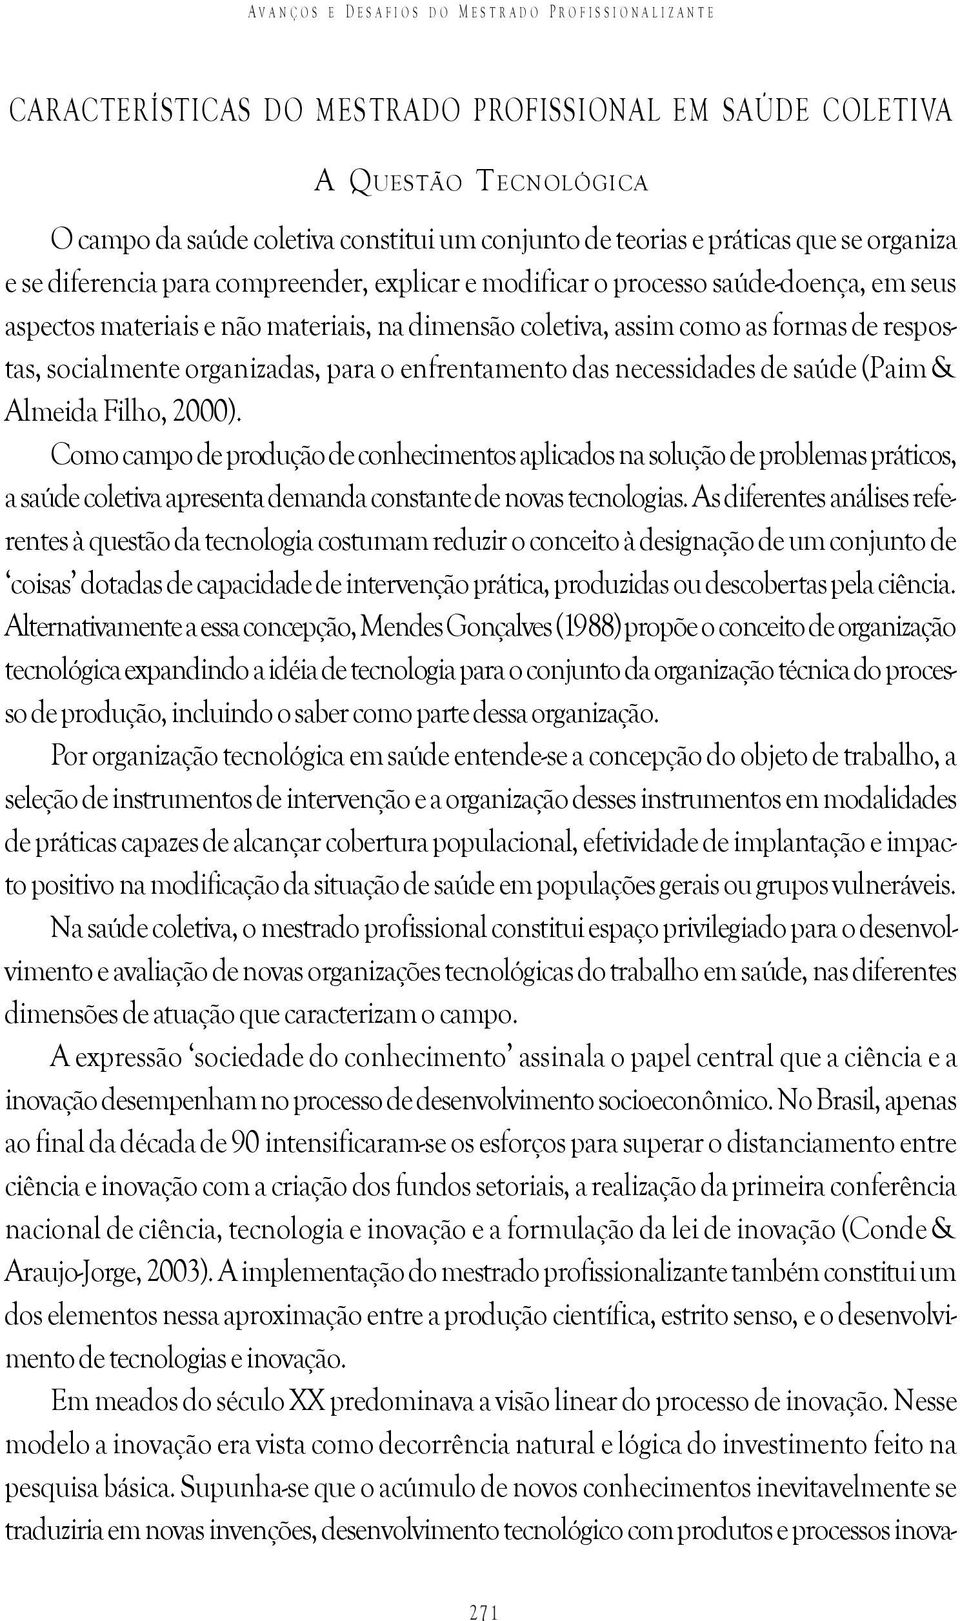 respostas, socialmente organizadas, para o enfrentamento das necessidades de saúde (Paim & Almeida Filho, 2000).